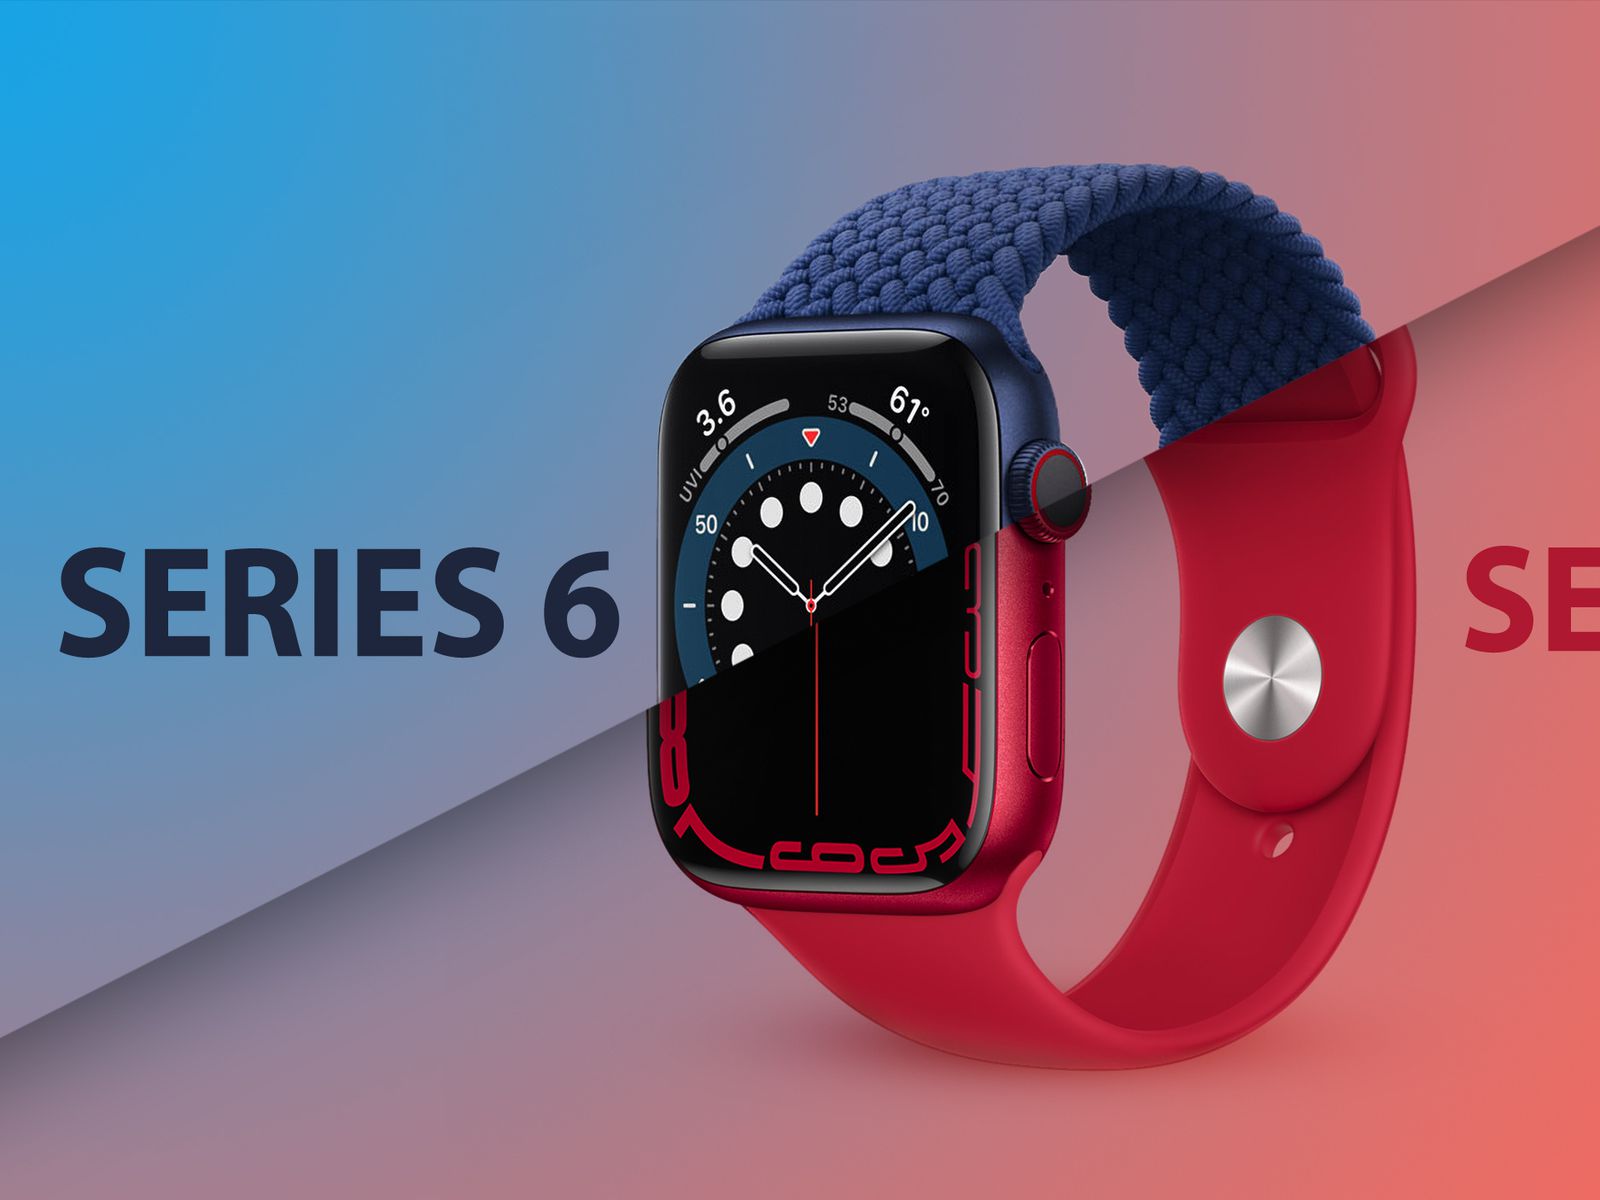 Apple Watch Series 6 vs. Apple Watch Series 7 Buyer's Guide